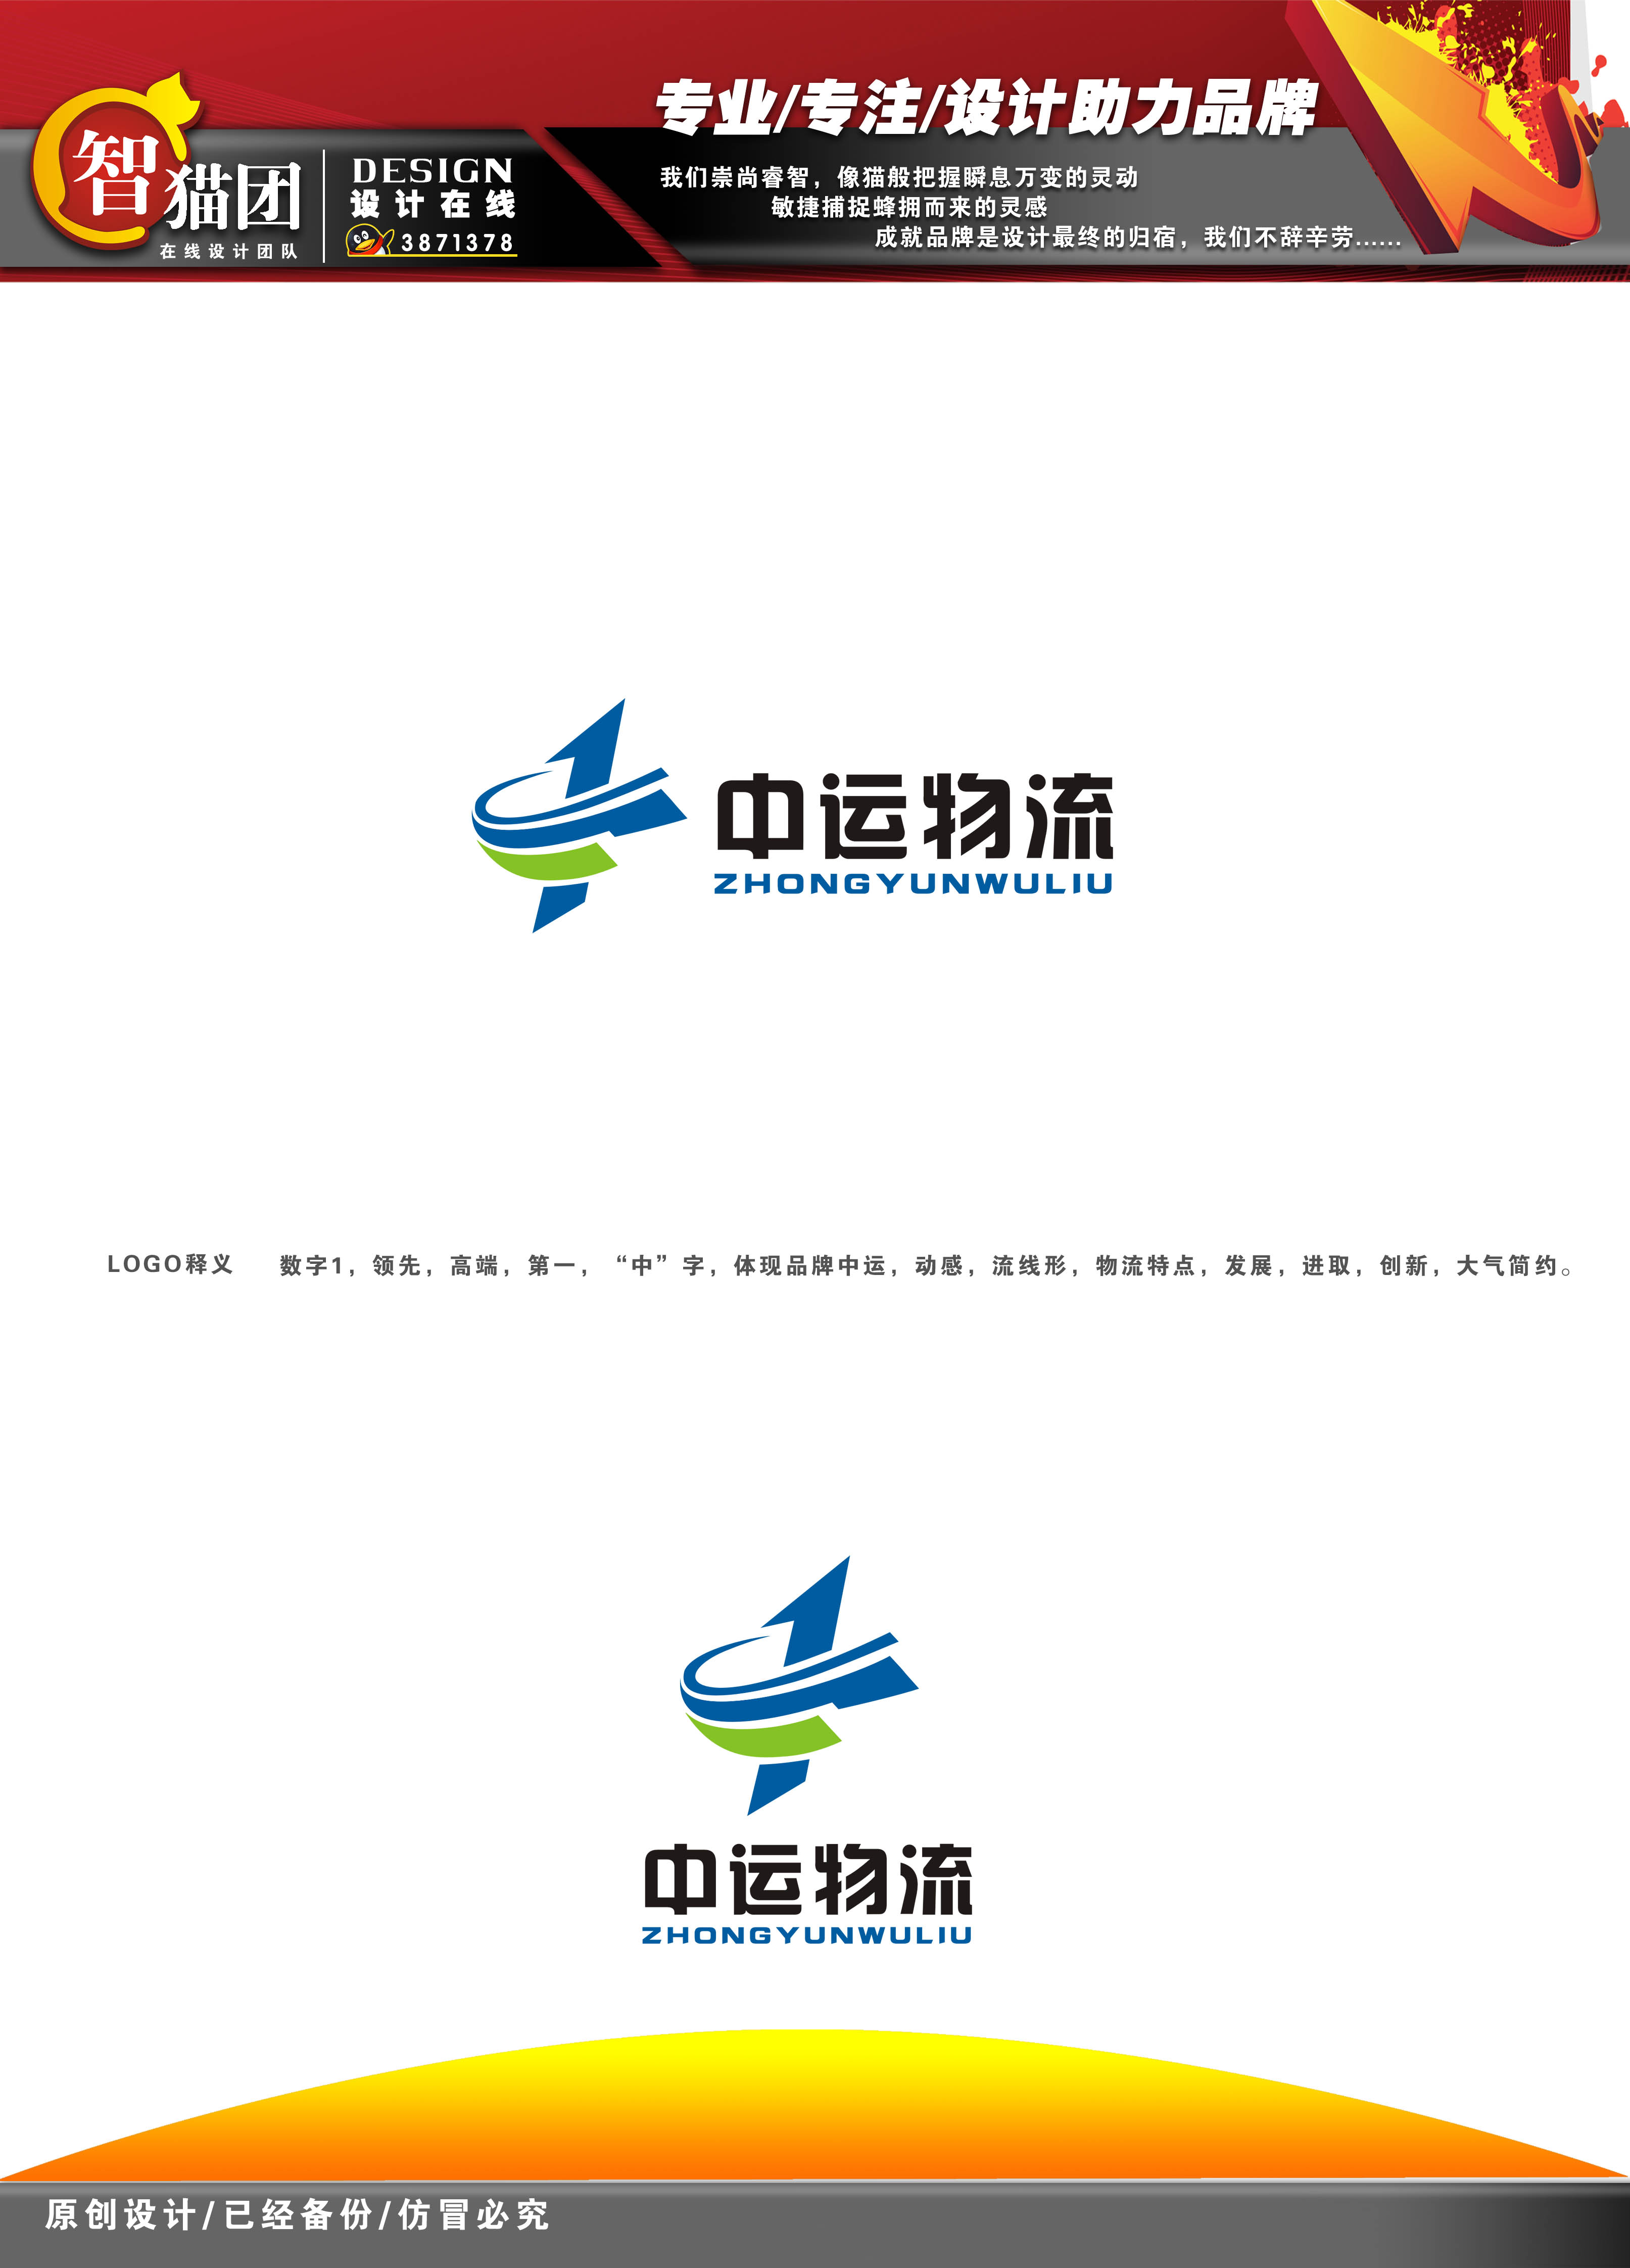 大连中运物流公司标识logo设计